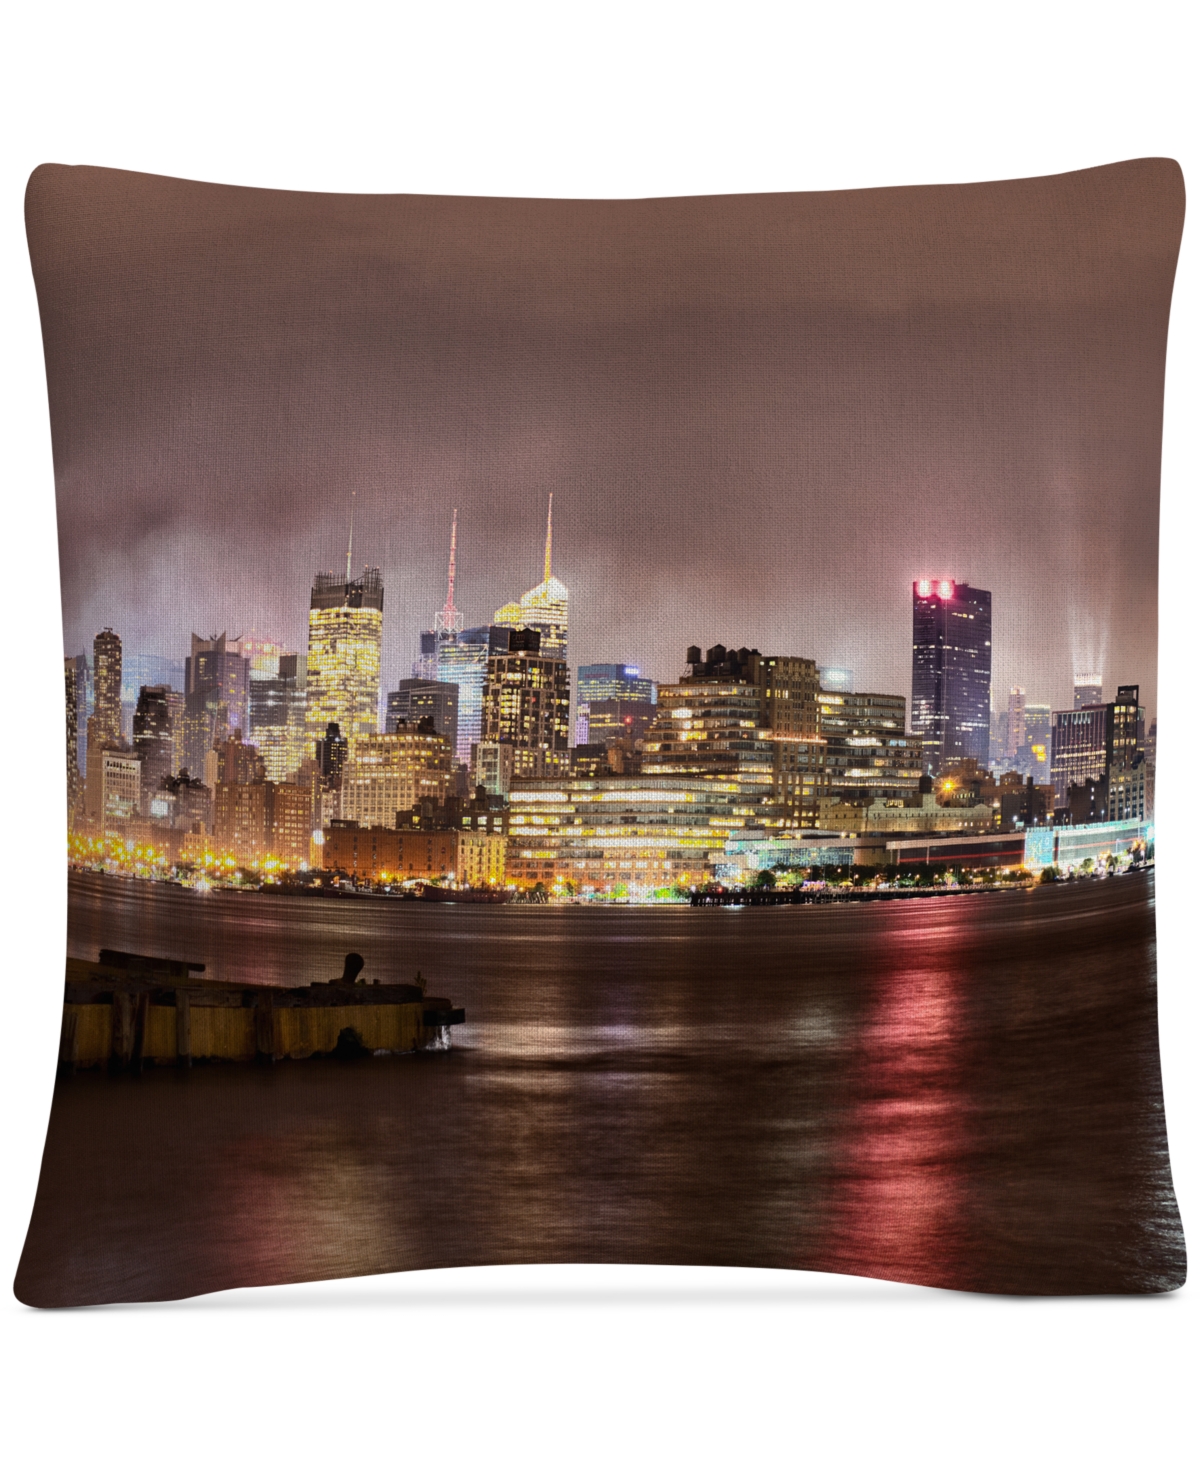 David Ayash Midtown Manhattan Over the Hudson River Decorative Pillow, 16 x 16